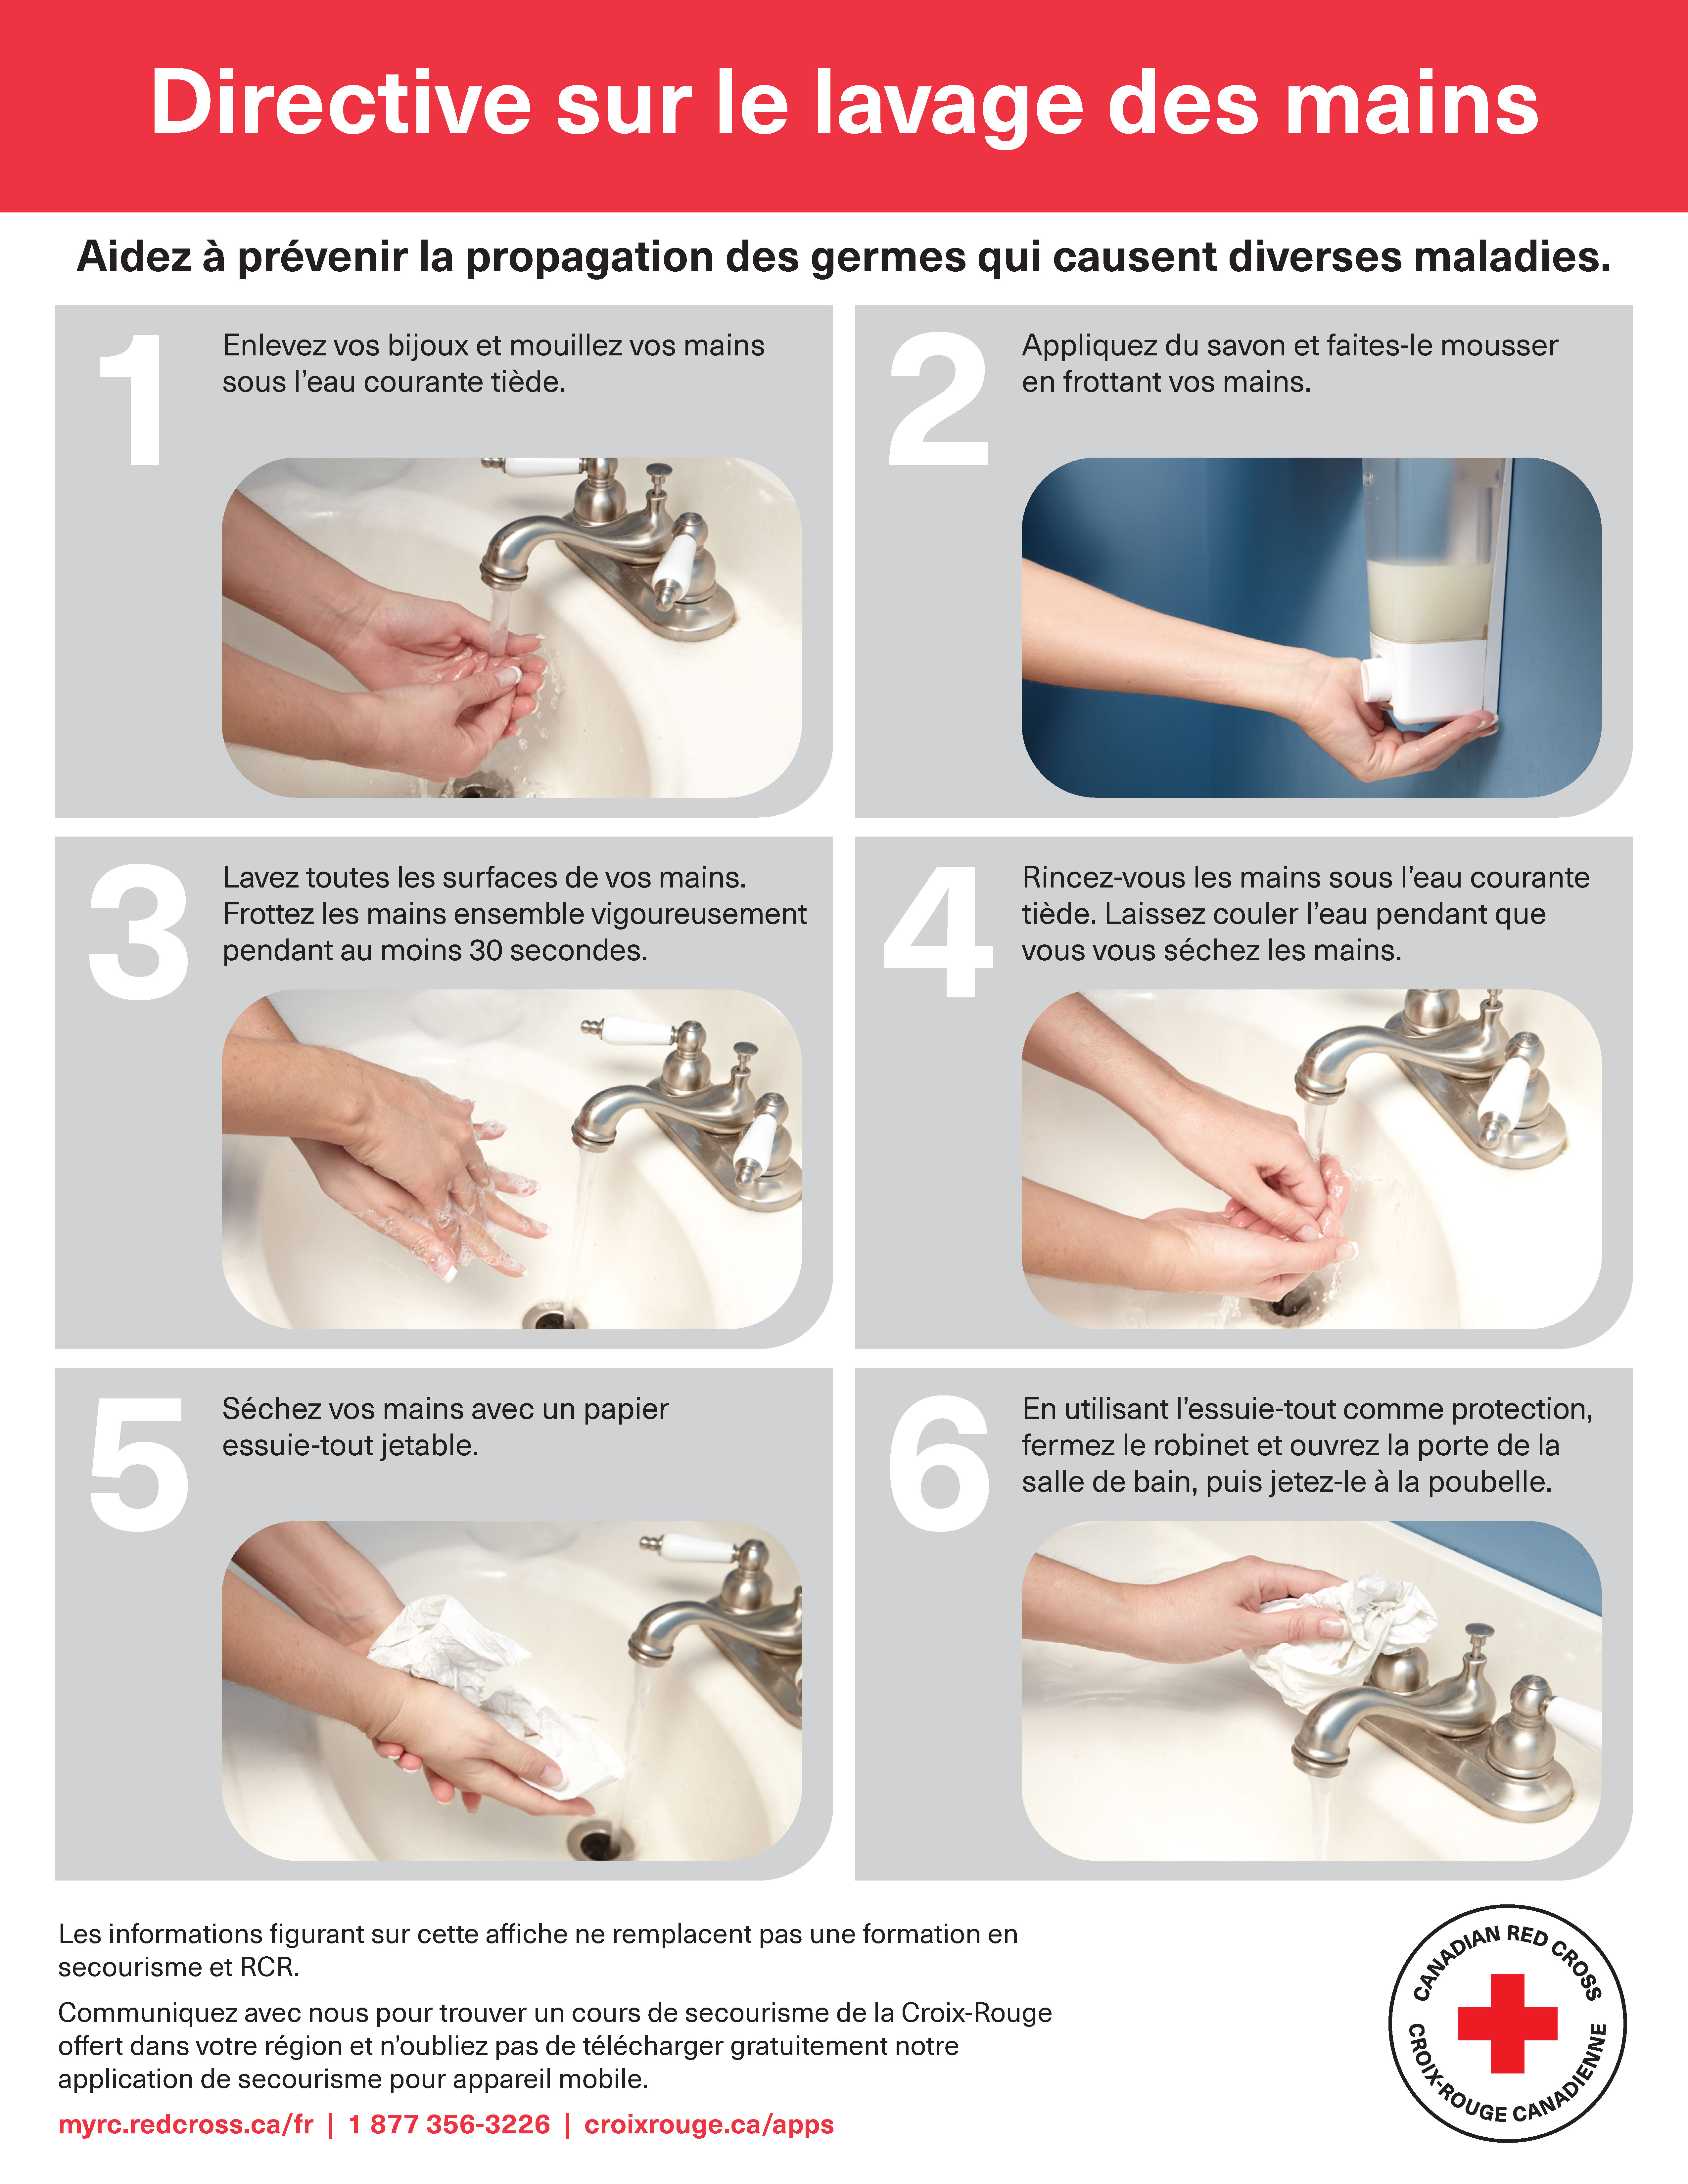 Affiche - Directive sur le lavage des mains de la Croix-Rouge canadienne. Éviter de propager des germes pouvant causer des maladies infectieuses. Premièrement, enlevez vos bijoux et mouillez vos mains avec de l’eau courante tiède. Deuxièmement, appliquez du savon et faites mousser en frottant vos mains l’une contre l’autre. Troisièmement, lavez toutes les parties de chaque main. Frottez vigoureusement vos mains l’une contre l’autre pendant au moins 30 secondes. Quatrièmement, rincez vos mains à l’eau courante tiède. Laissez l’eau couler pendant que vous vous séchez les mains. Cinquièmement, séchez vos mains à l’aide d’une serviette jetable propre. Sixièmement, en utilisant la serviette comme protection, fermez le robinet et ouvrez la porte, puis jetez la serviette à la poubelle. Les informations figurant sur cette affiche ne remplacent pas une formation en secourisme et RCR. Communiquez avec nous pour trouver un cours de secourisme de la Croix-Rouge dans votre région et téléchargez notre application gratuite de secourisme à macr.croixrouge.ca. Numéro de téléphone 1 877 356-3226. Visitez croixrouge.ca/apps.